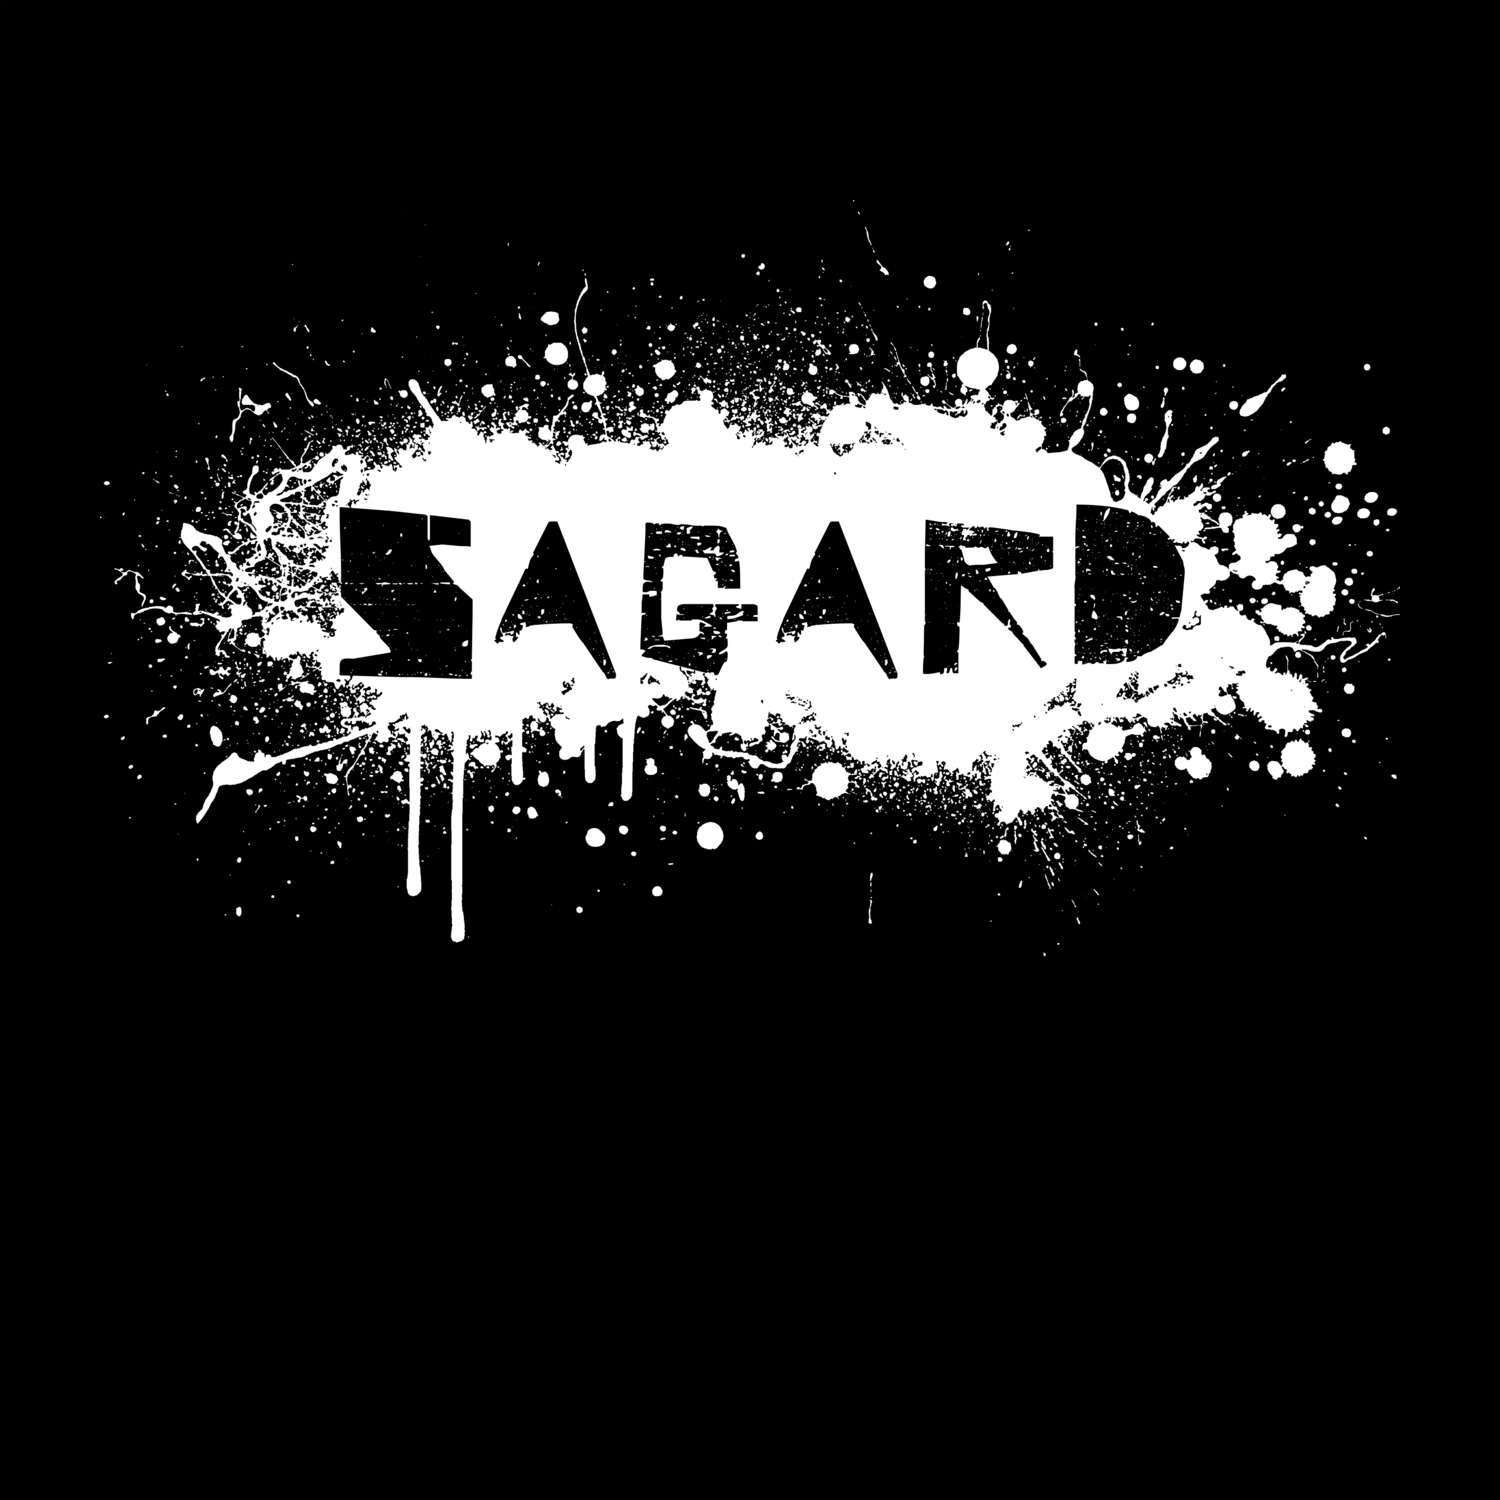 Sagard T-Shirt »Paint Splash Punk«